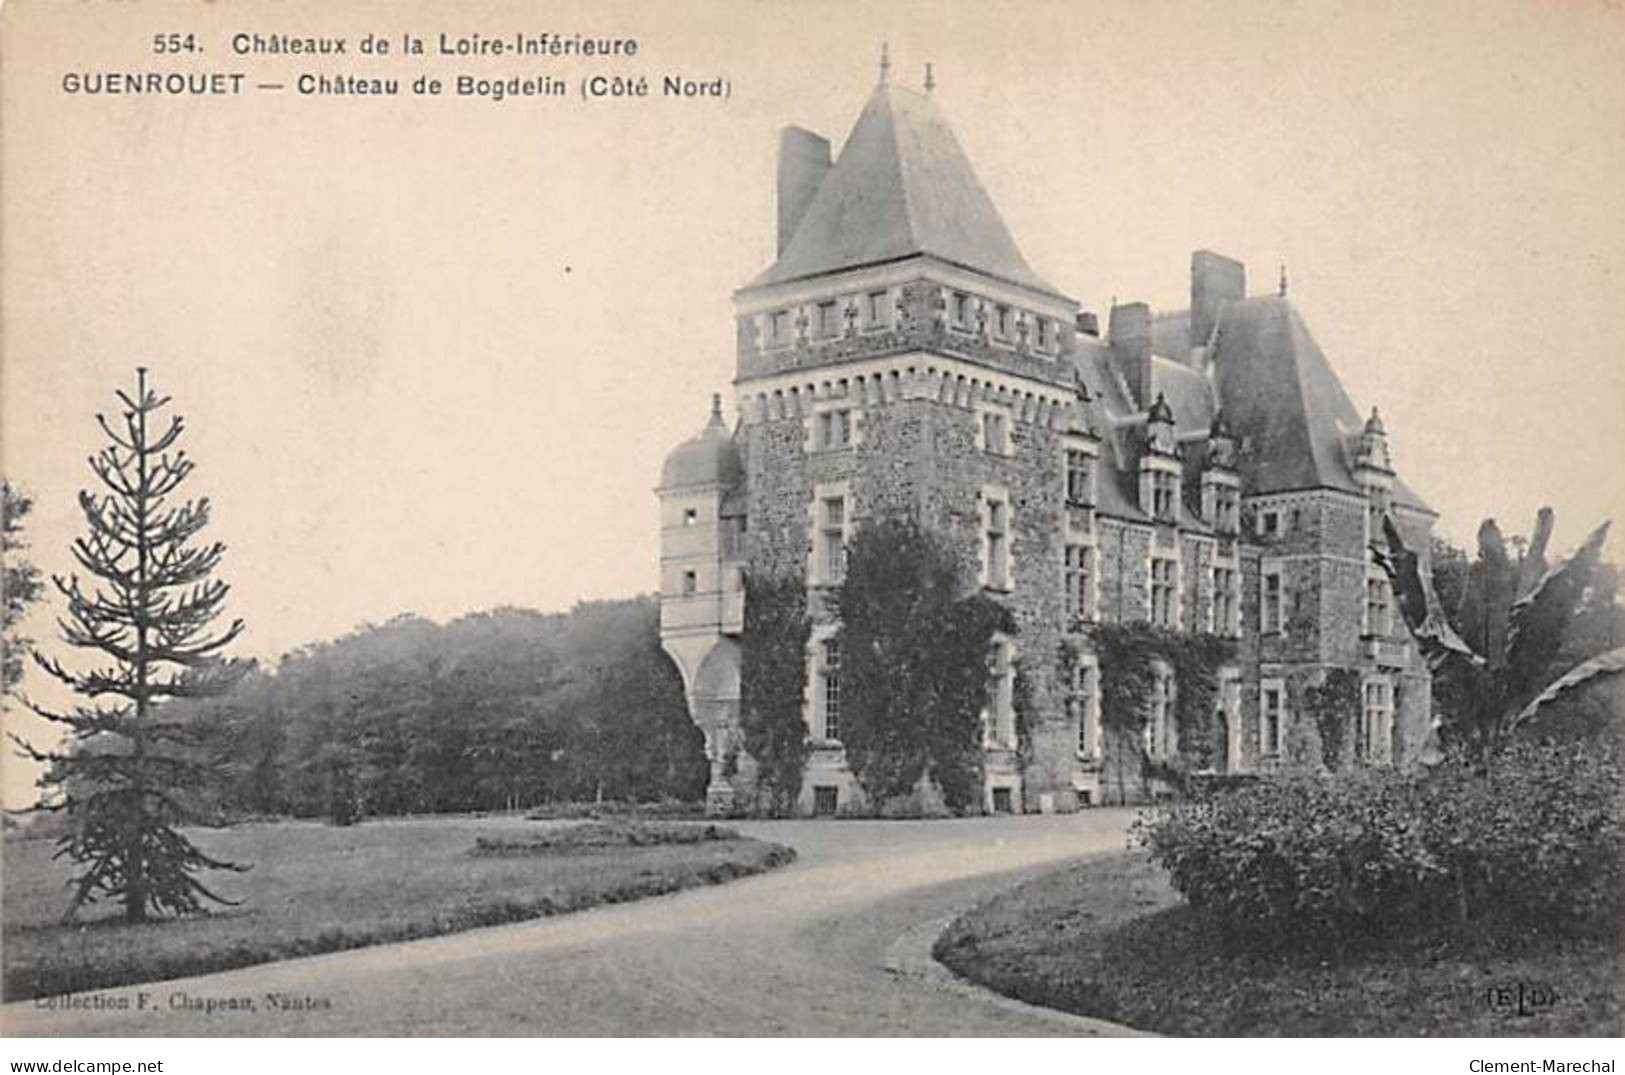 GUENROUET - Château de Bogdelin - très bon état